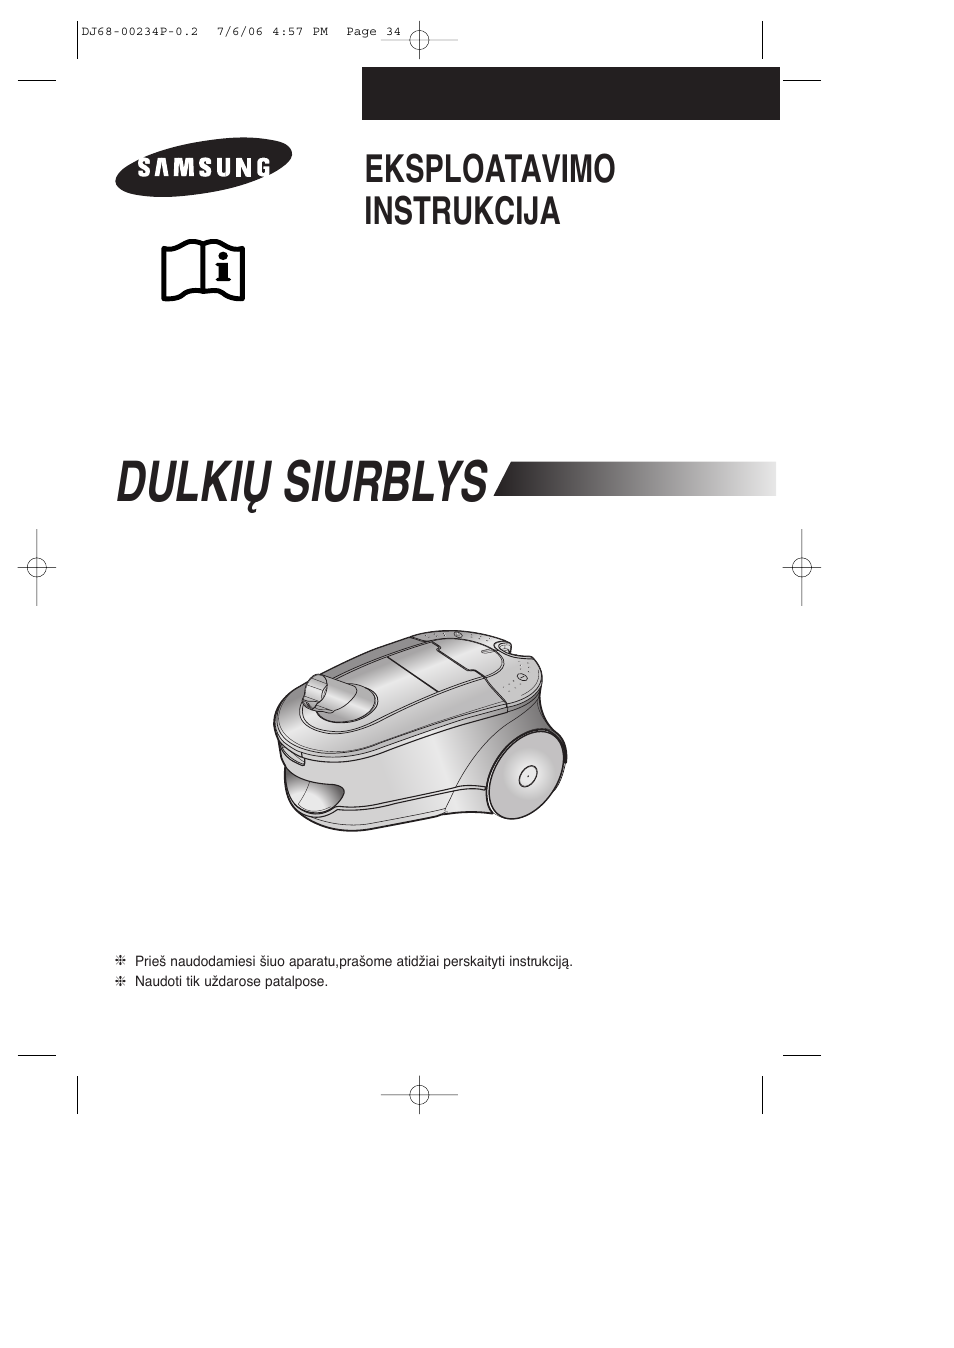 Dulkið siurblys, Eksploatavimo instrukcija | Samsung SC7840 User Manual | Page 34 / 56